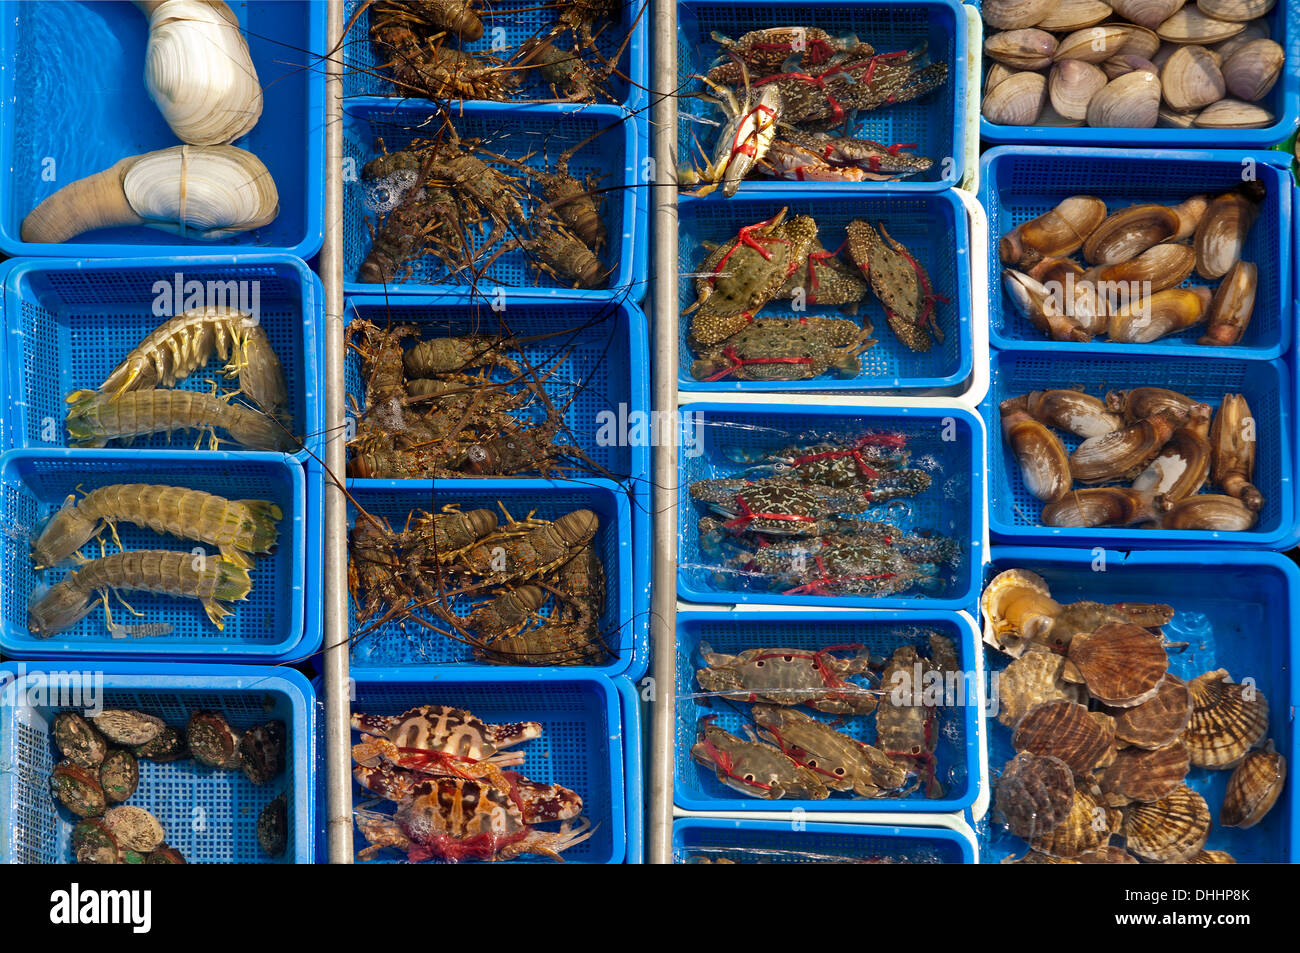 Basins with live marine animals for sale, Sai Kung, Hong Kong, China Stock Photo